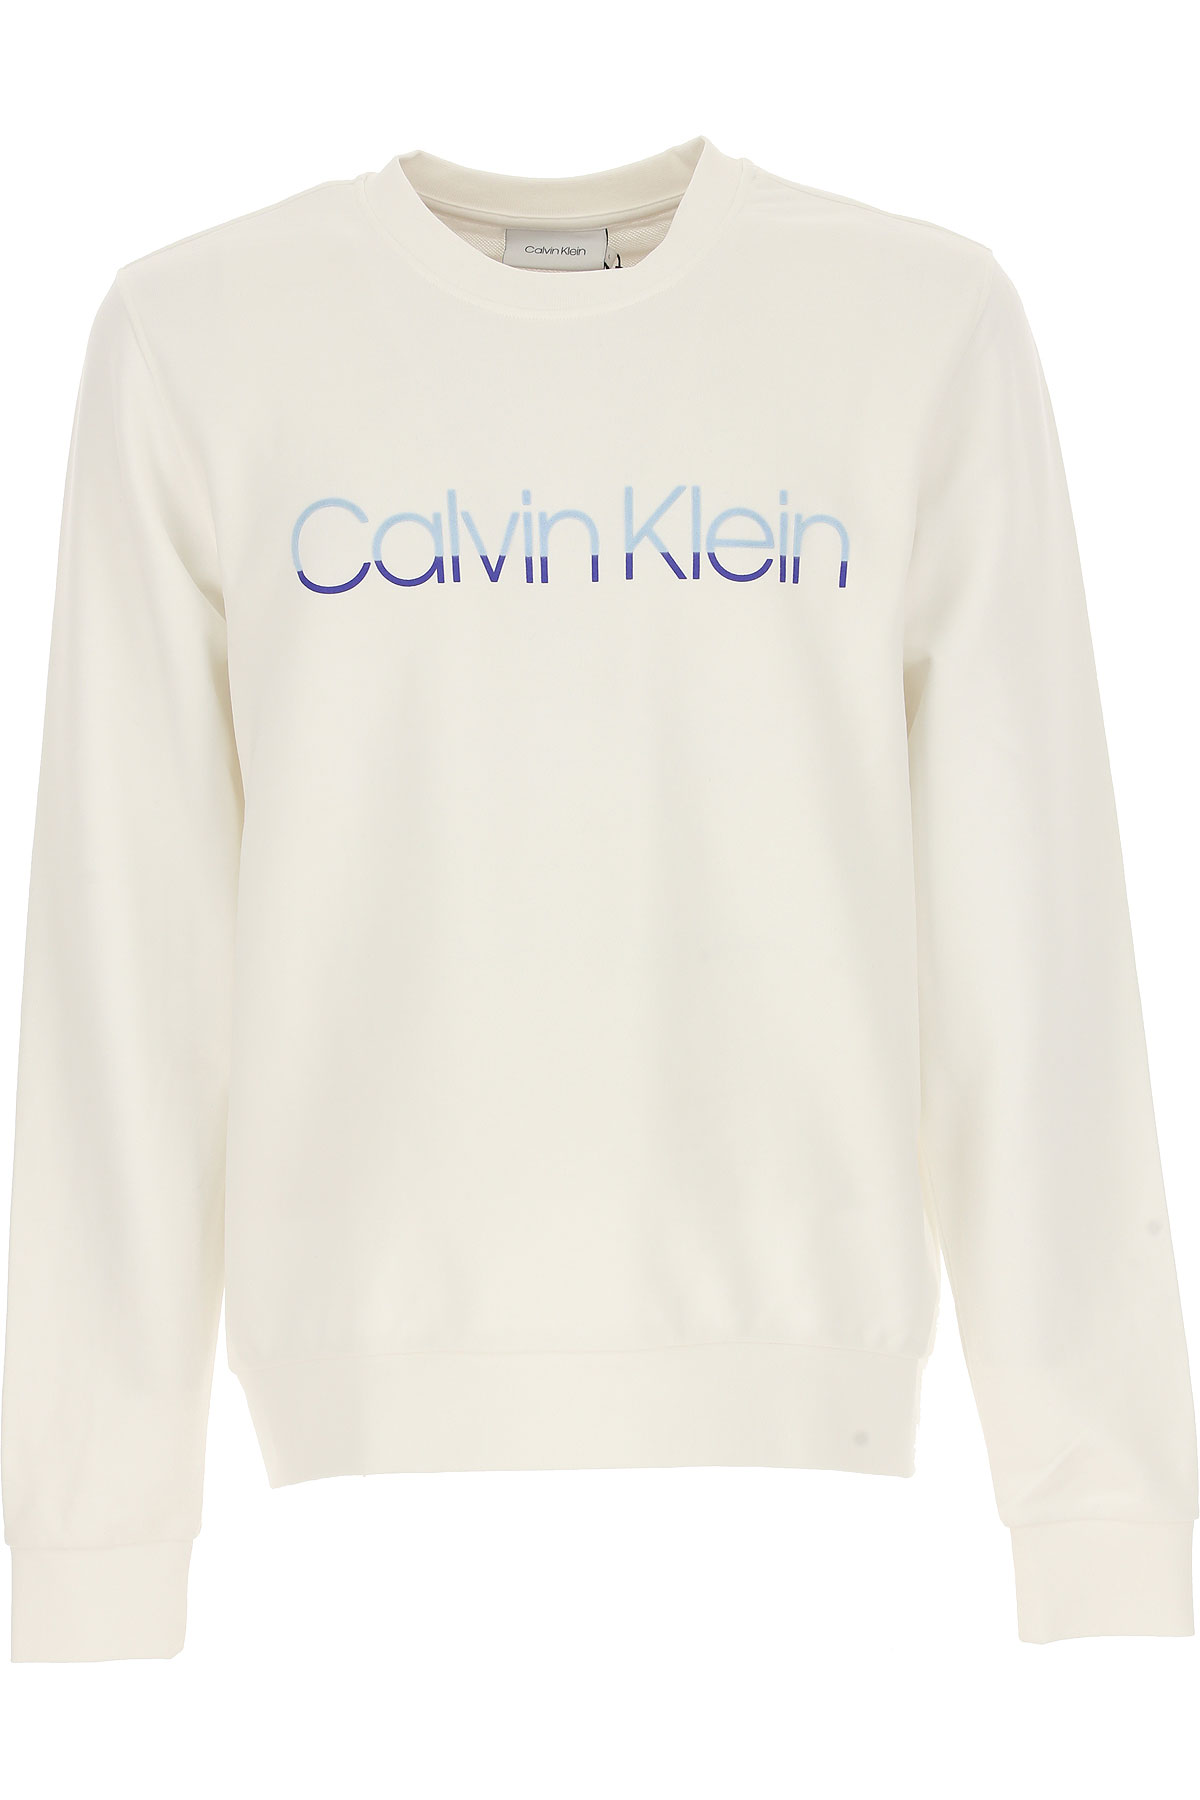 Calvin Klein Sweatshirt für Herren, Kapuzenpulli, Hoodie, Sweats Günstig im Outlet Sale, Weiss, Baumwolle, 2017, XL XXL